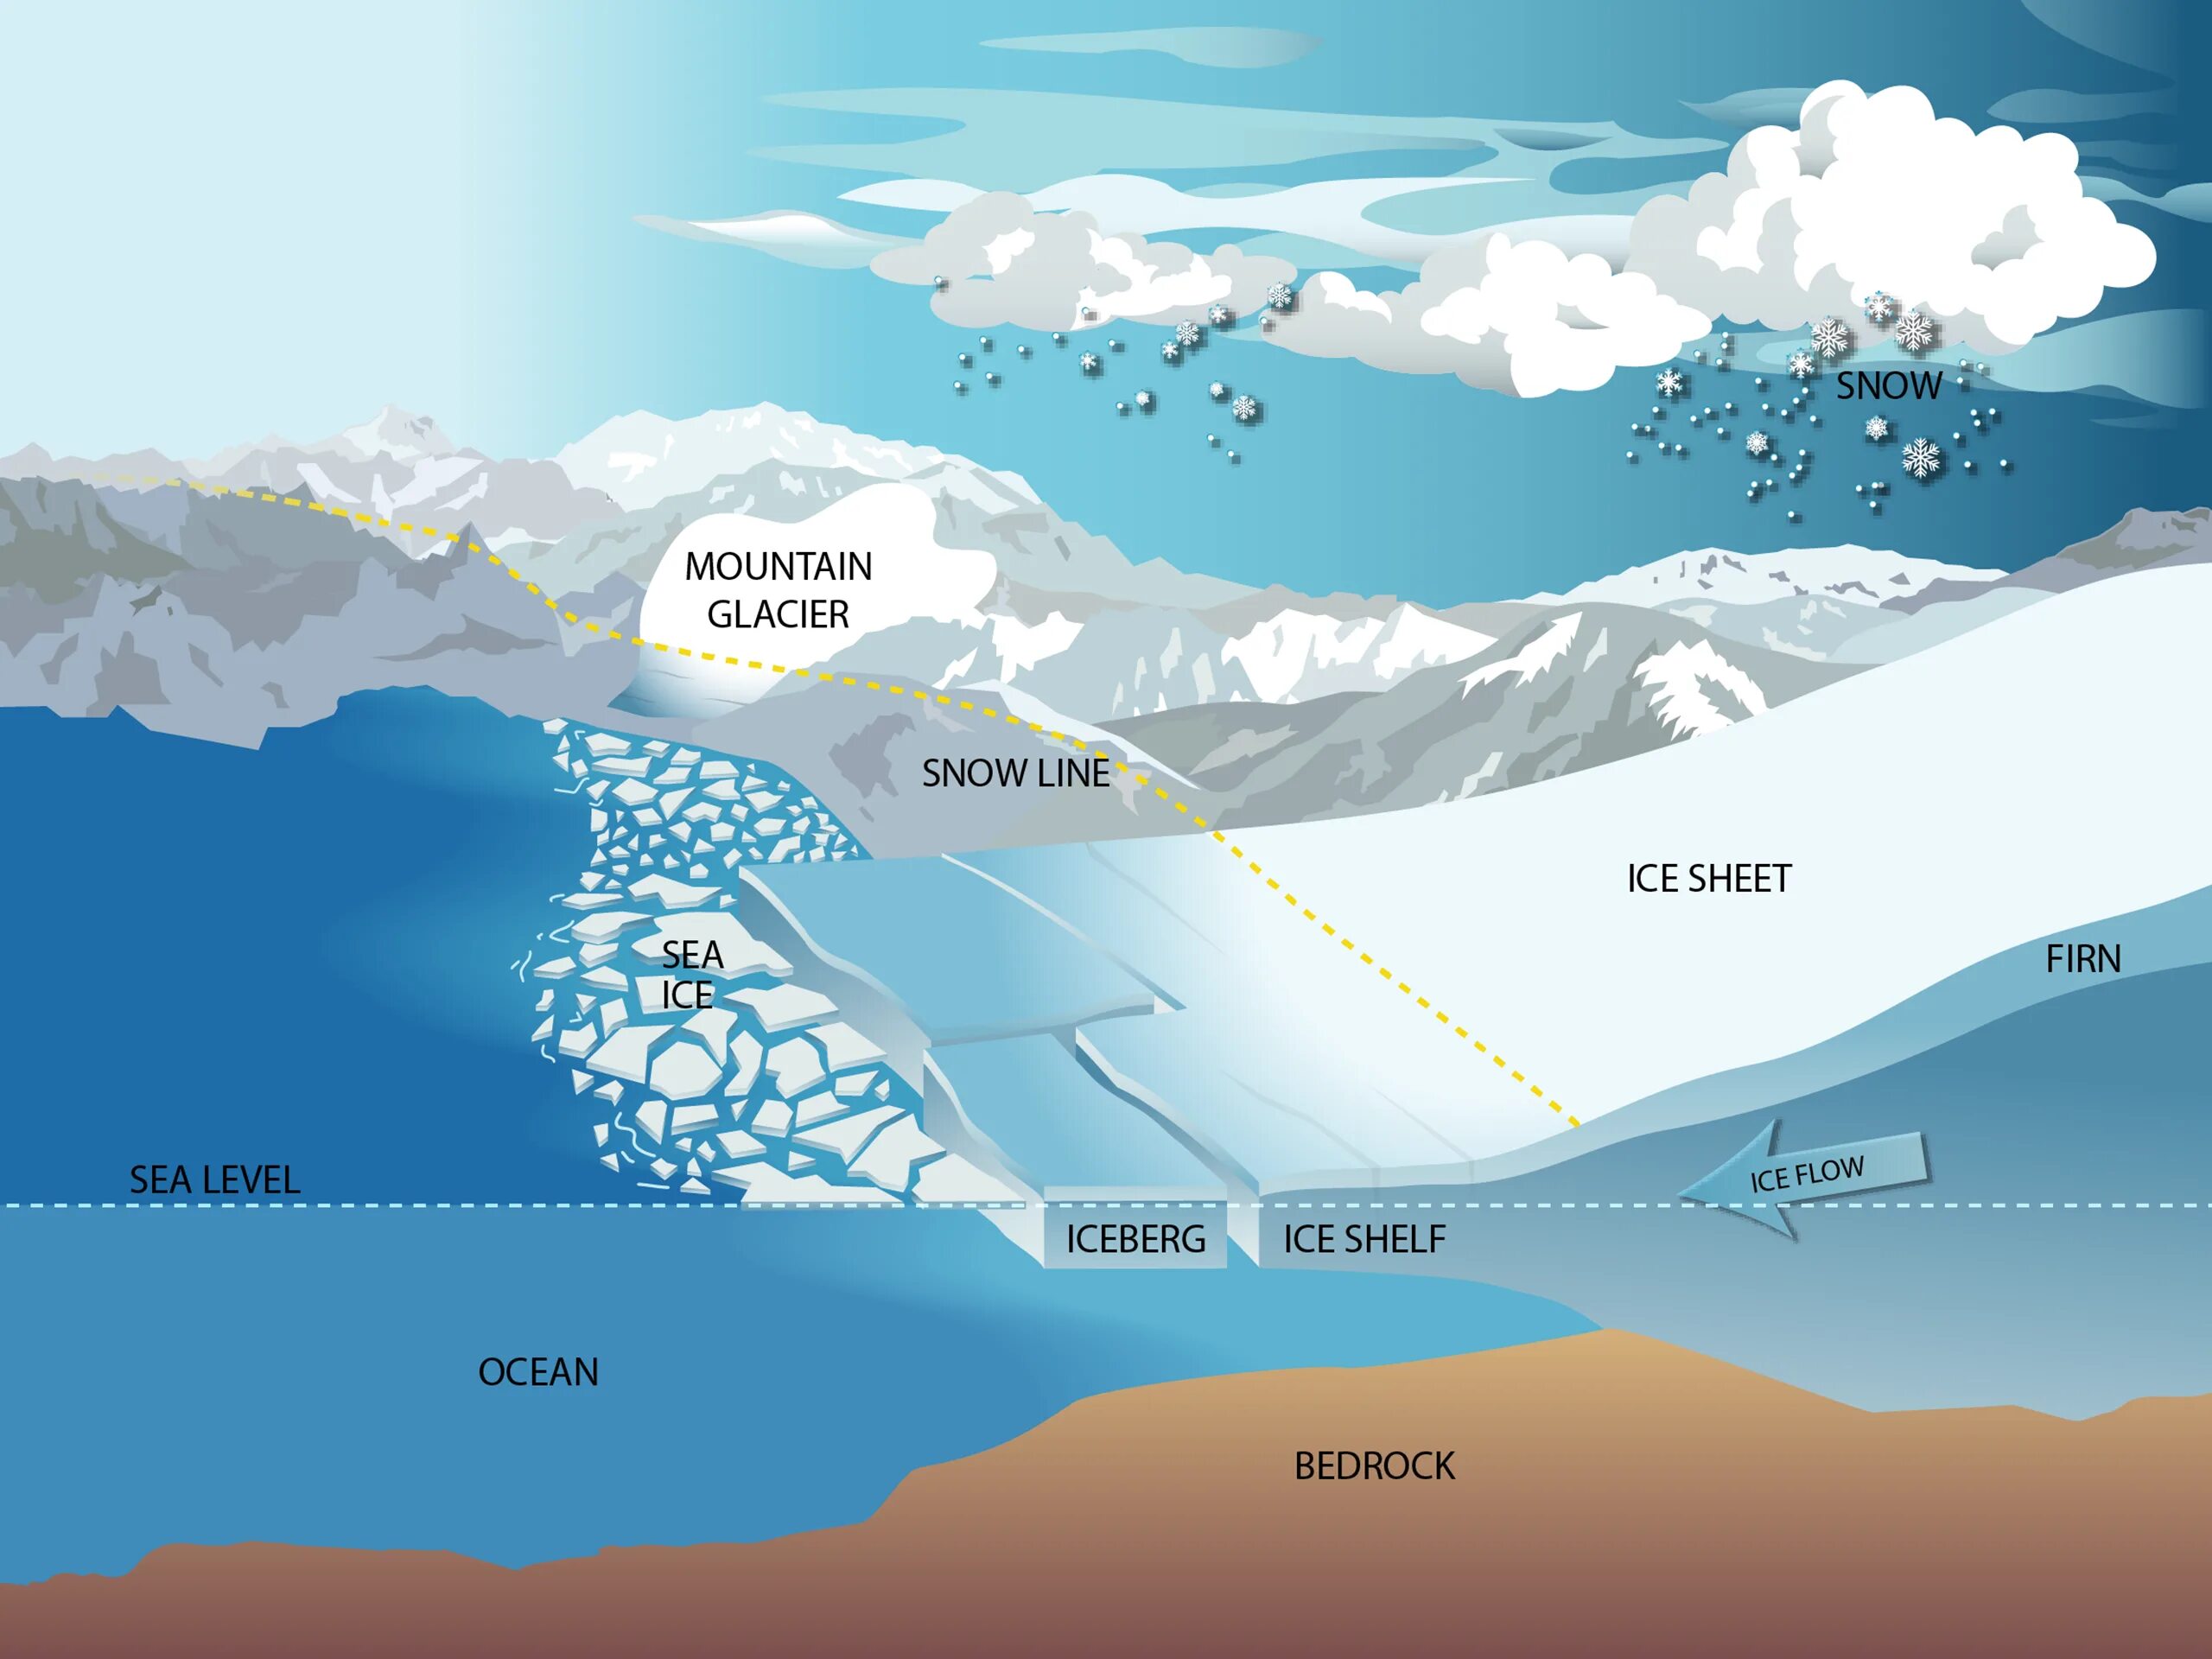 Снеговая линия. Ледники снеговая линия. Строение ледника снеговая линия. Снеговая граница ледника. Level ice